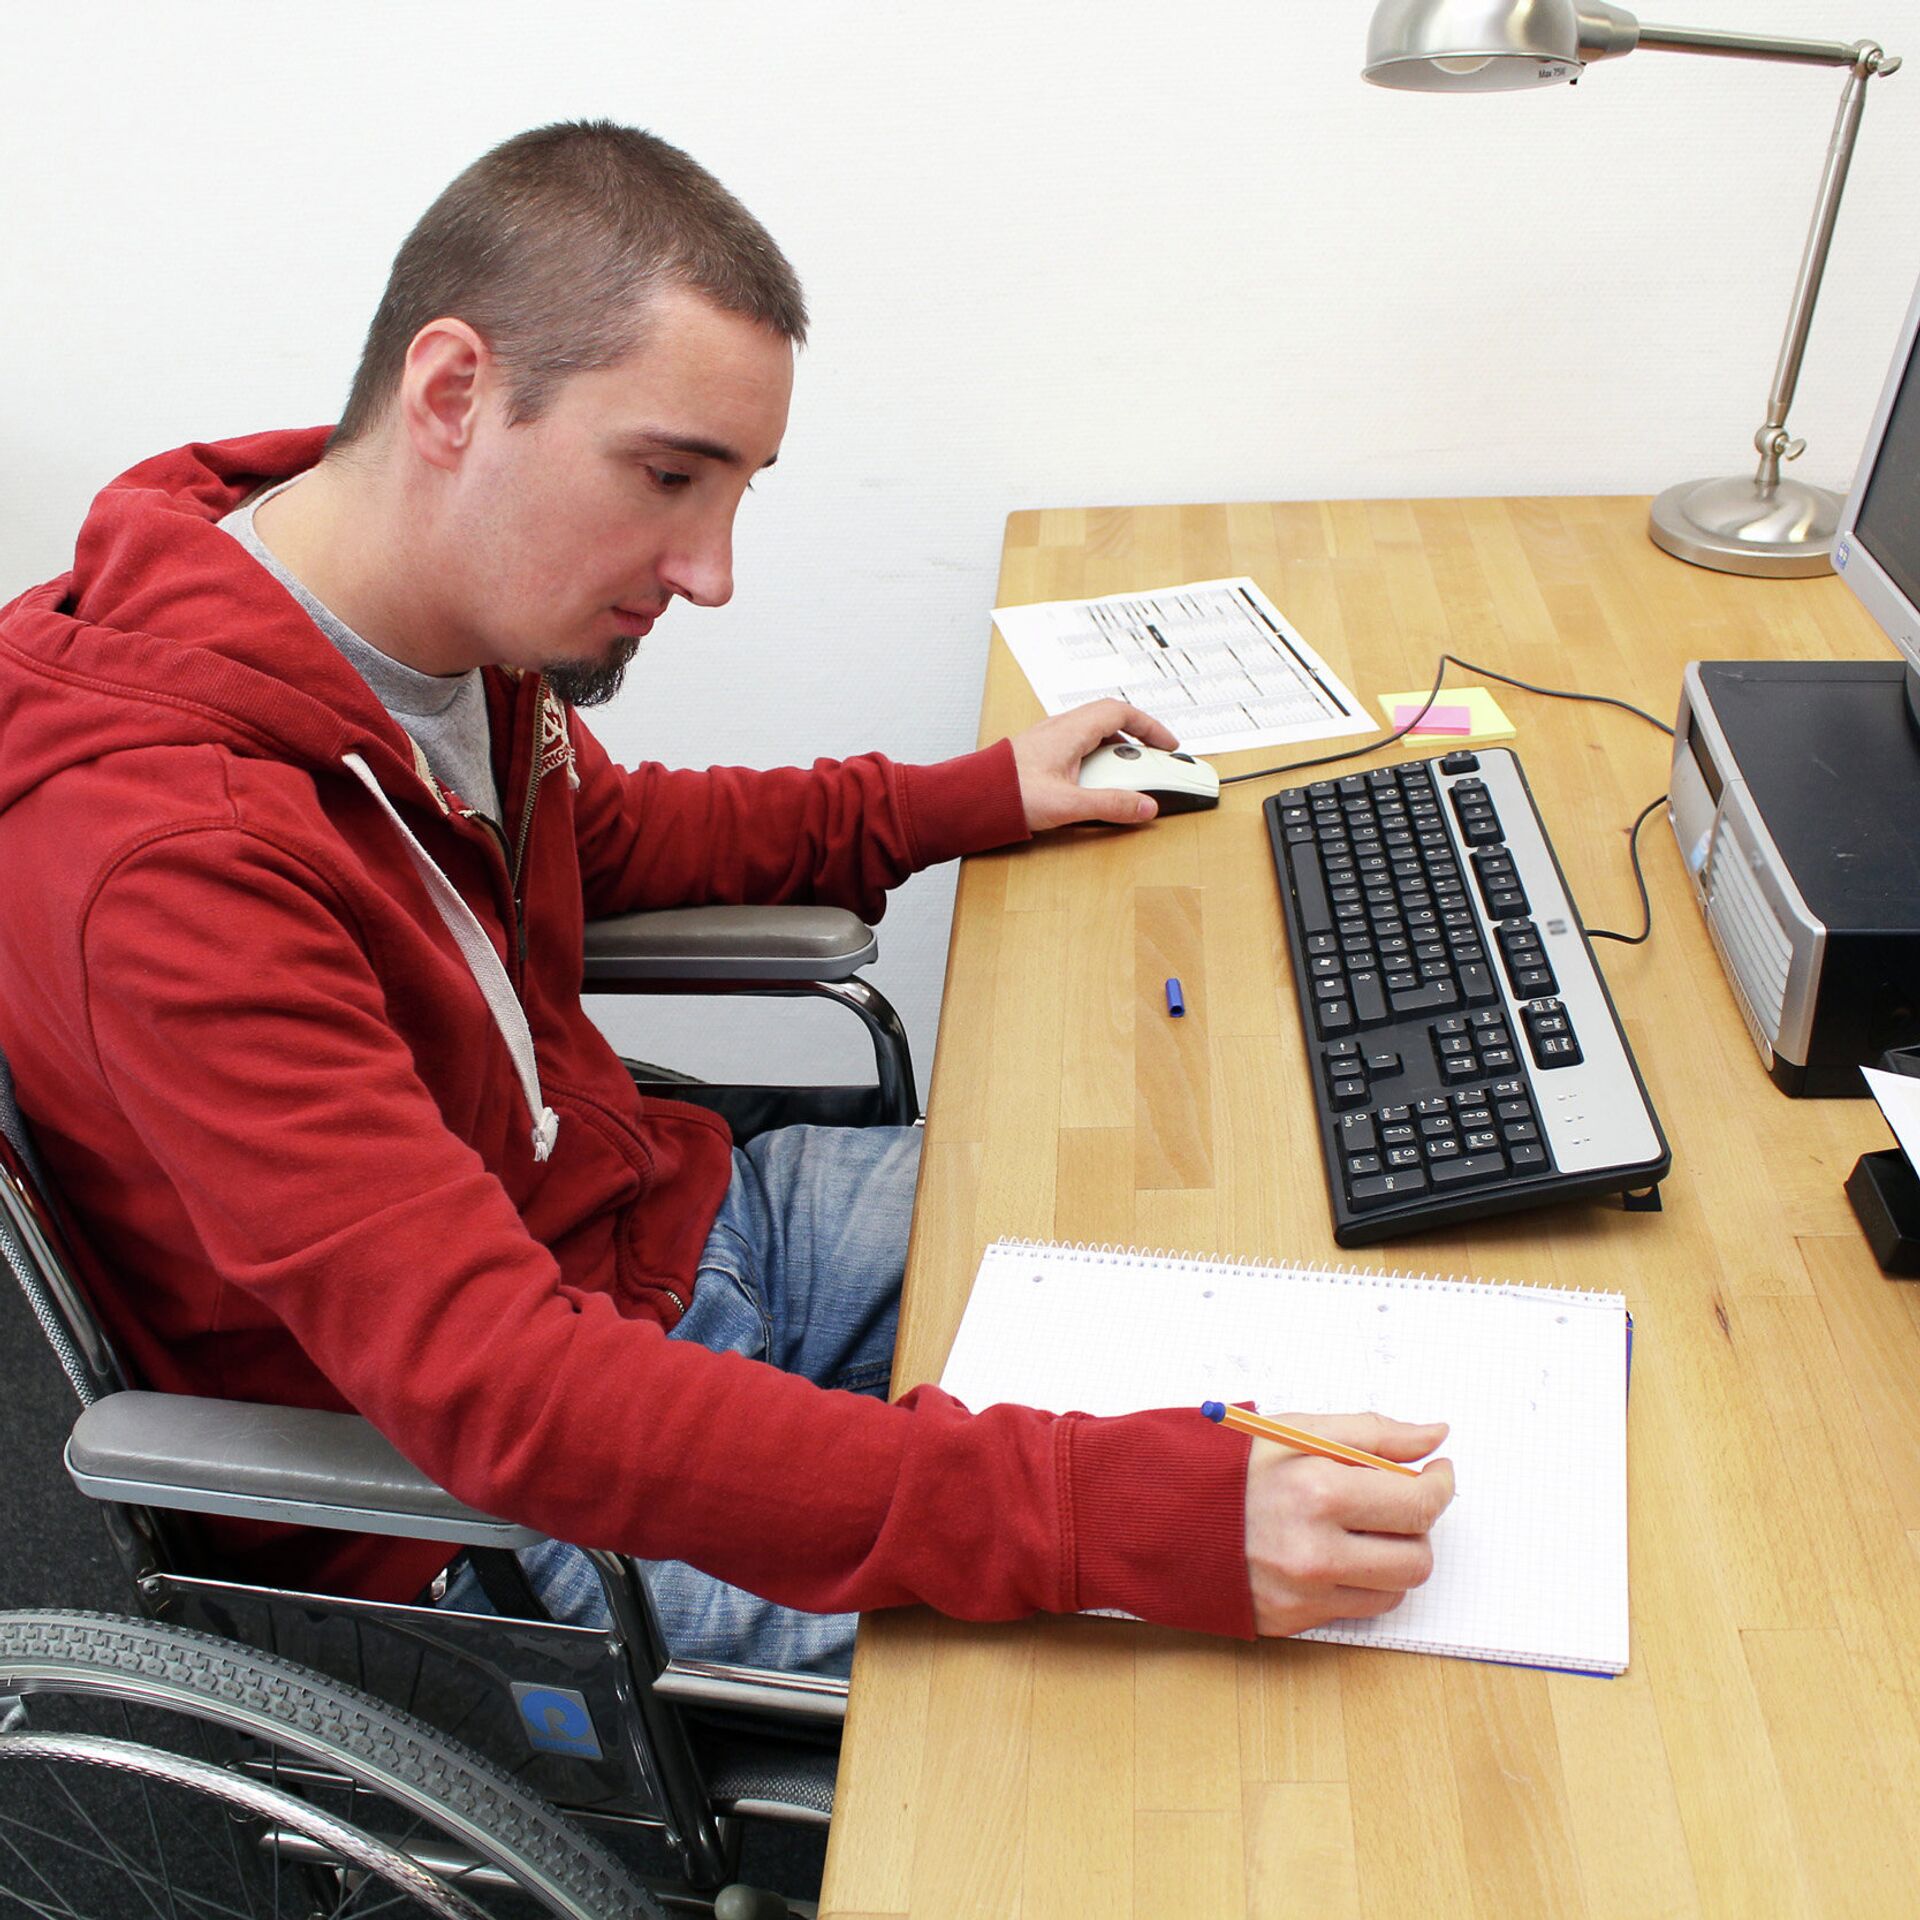 Инвалиды сдают экзамены. Инвалид за компьютером. Людей с ограниченными возможностями компьютер. Рабочие места для инвалидов. Человек за компьютером.